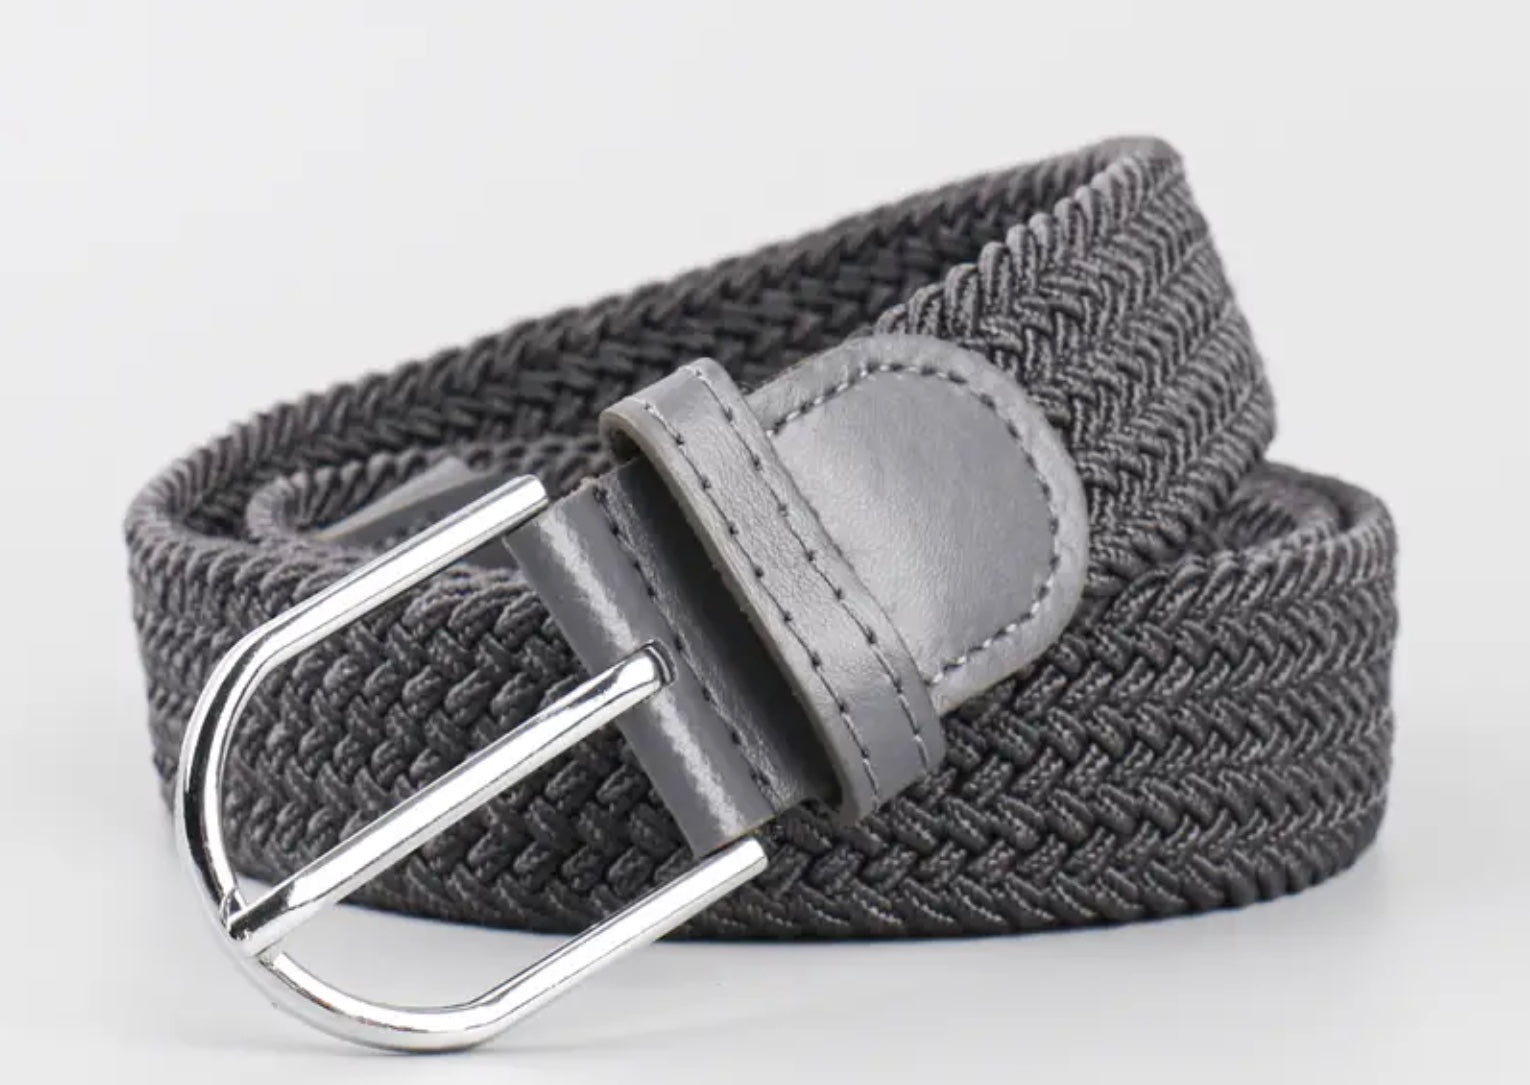 Unisex Elastic Stretch Mesh Belt Grey With Grey Trim 105cm